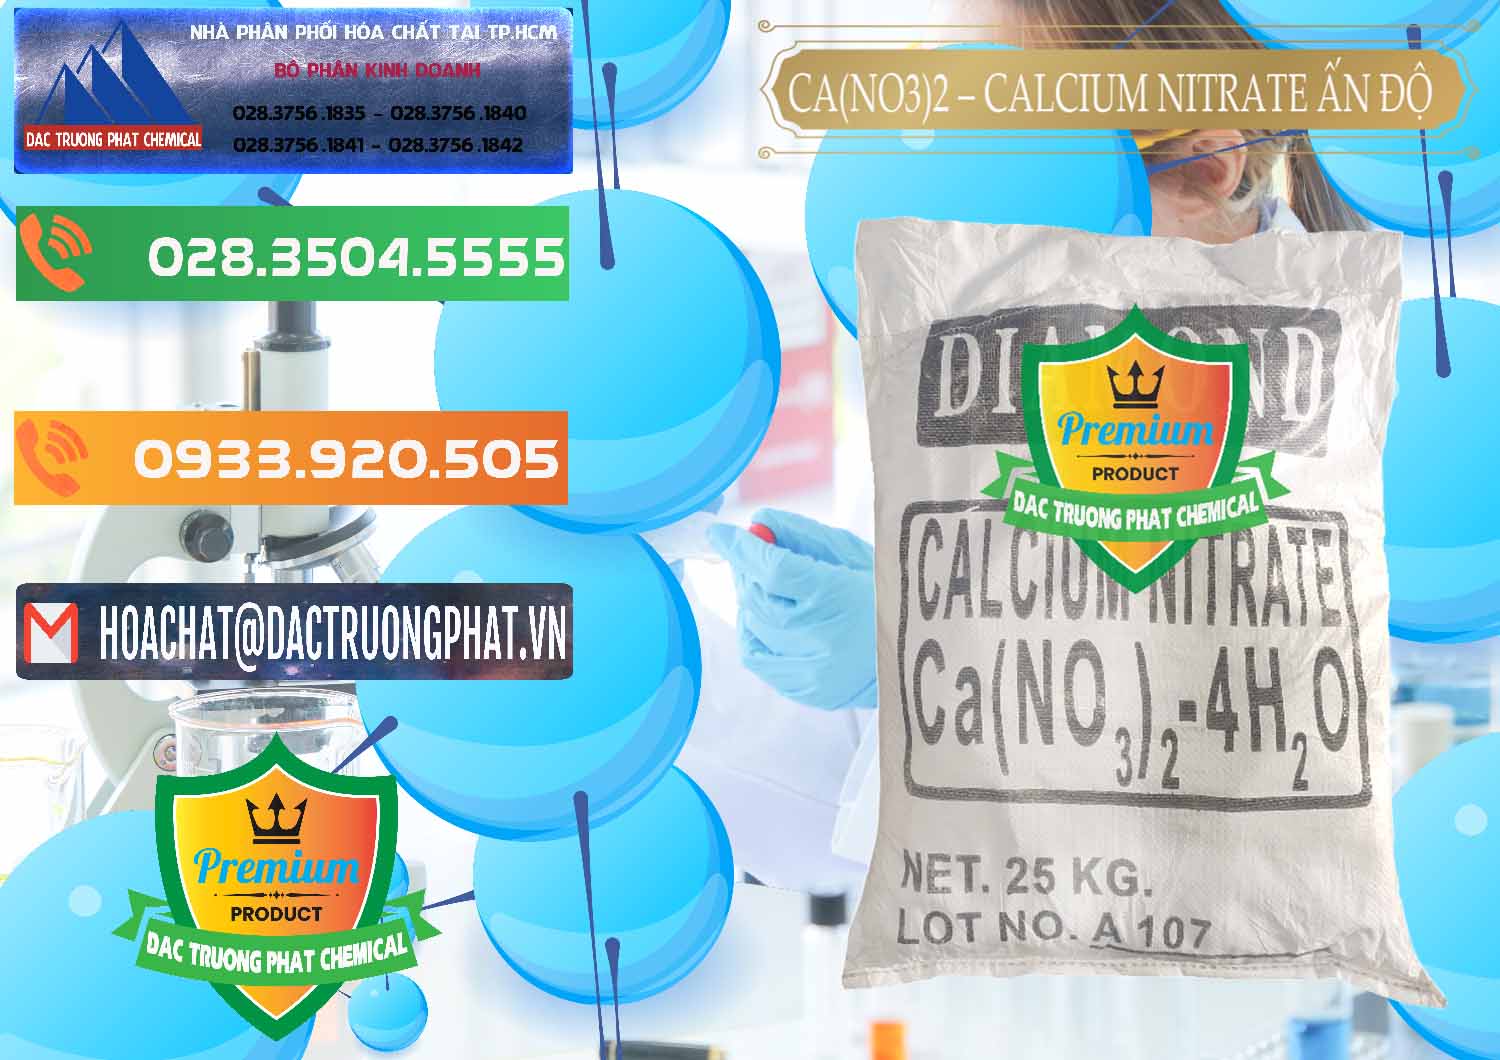 Nơi cung ứng ( bán ) CA(NO3)2 – Calcium Nitrate Ấn Độ India - 0038 - Cty kinh doanh ( cung cấp ) hóa chất tại TP.HCM - hoachatxulynuoc.com.vn